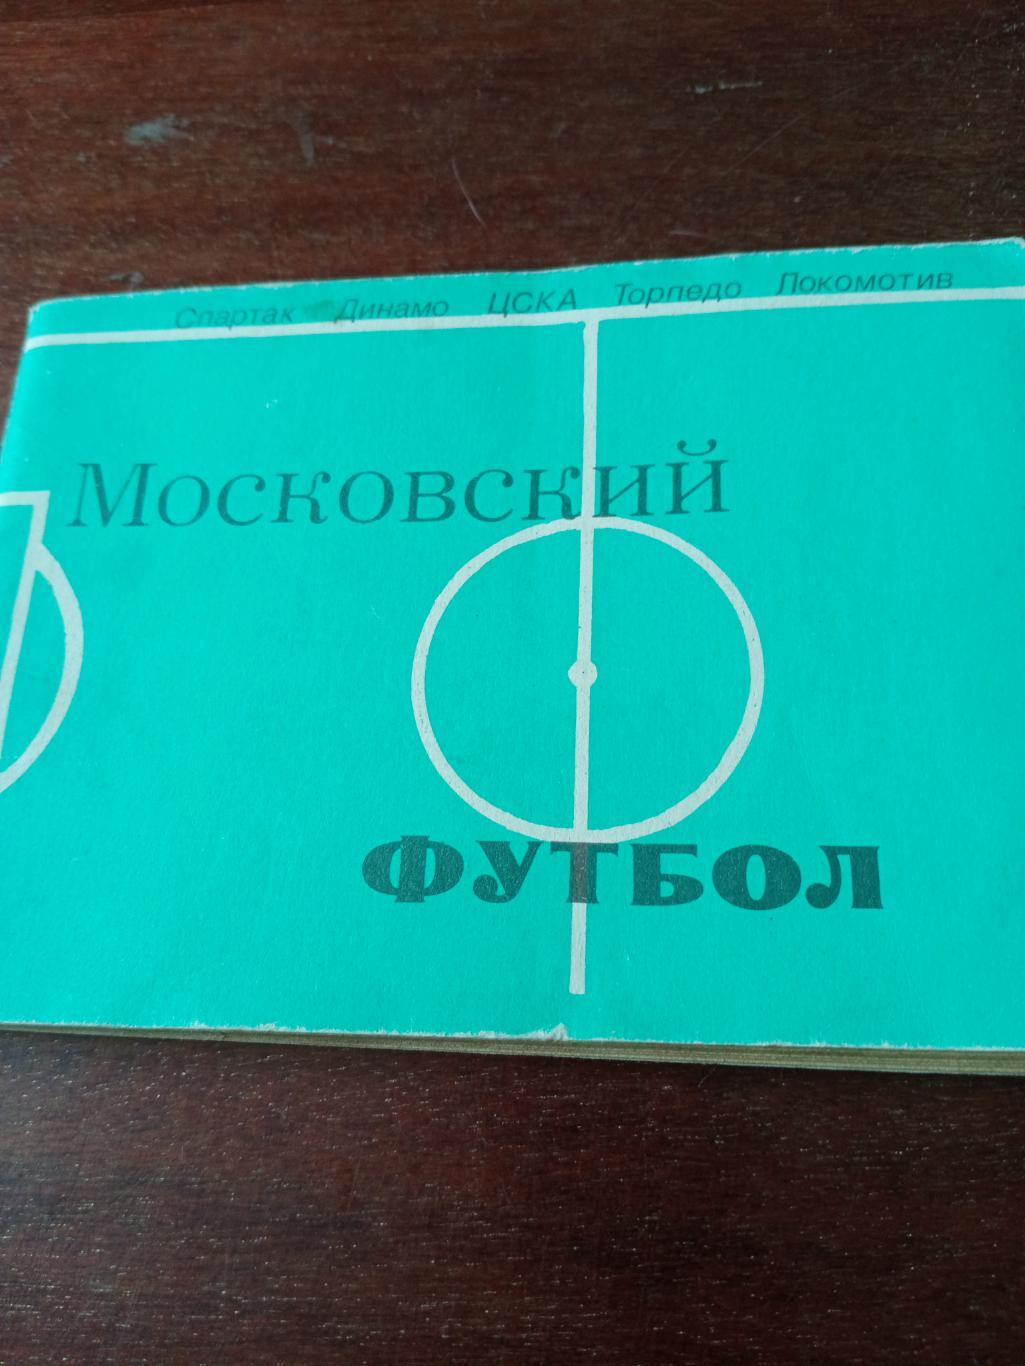 Московский футбол. 1981 год